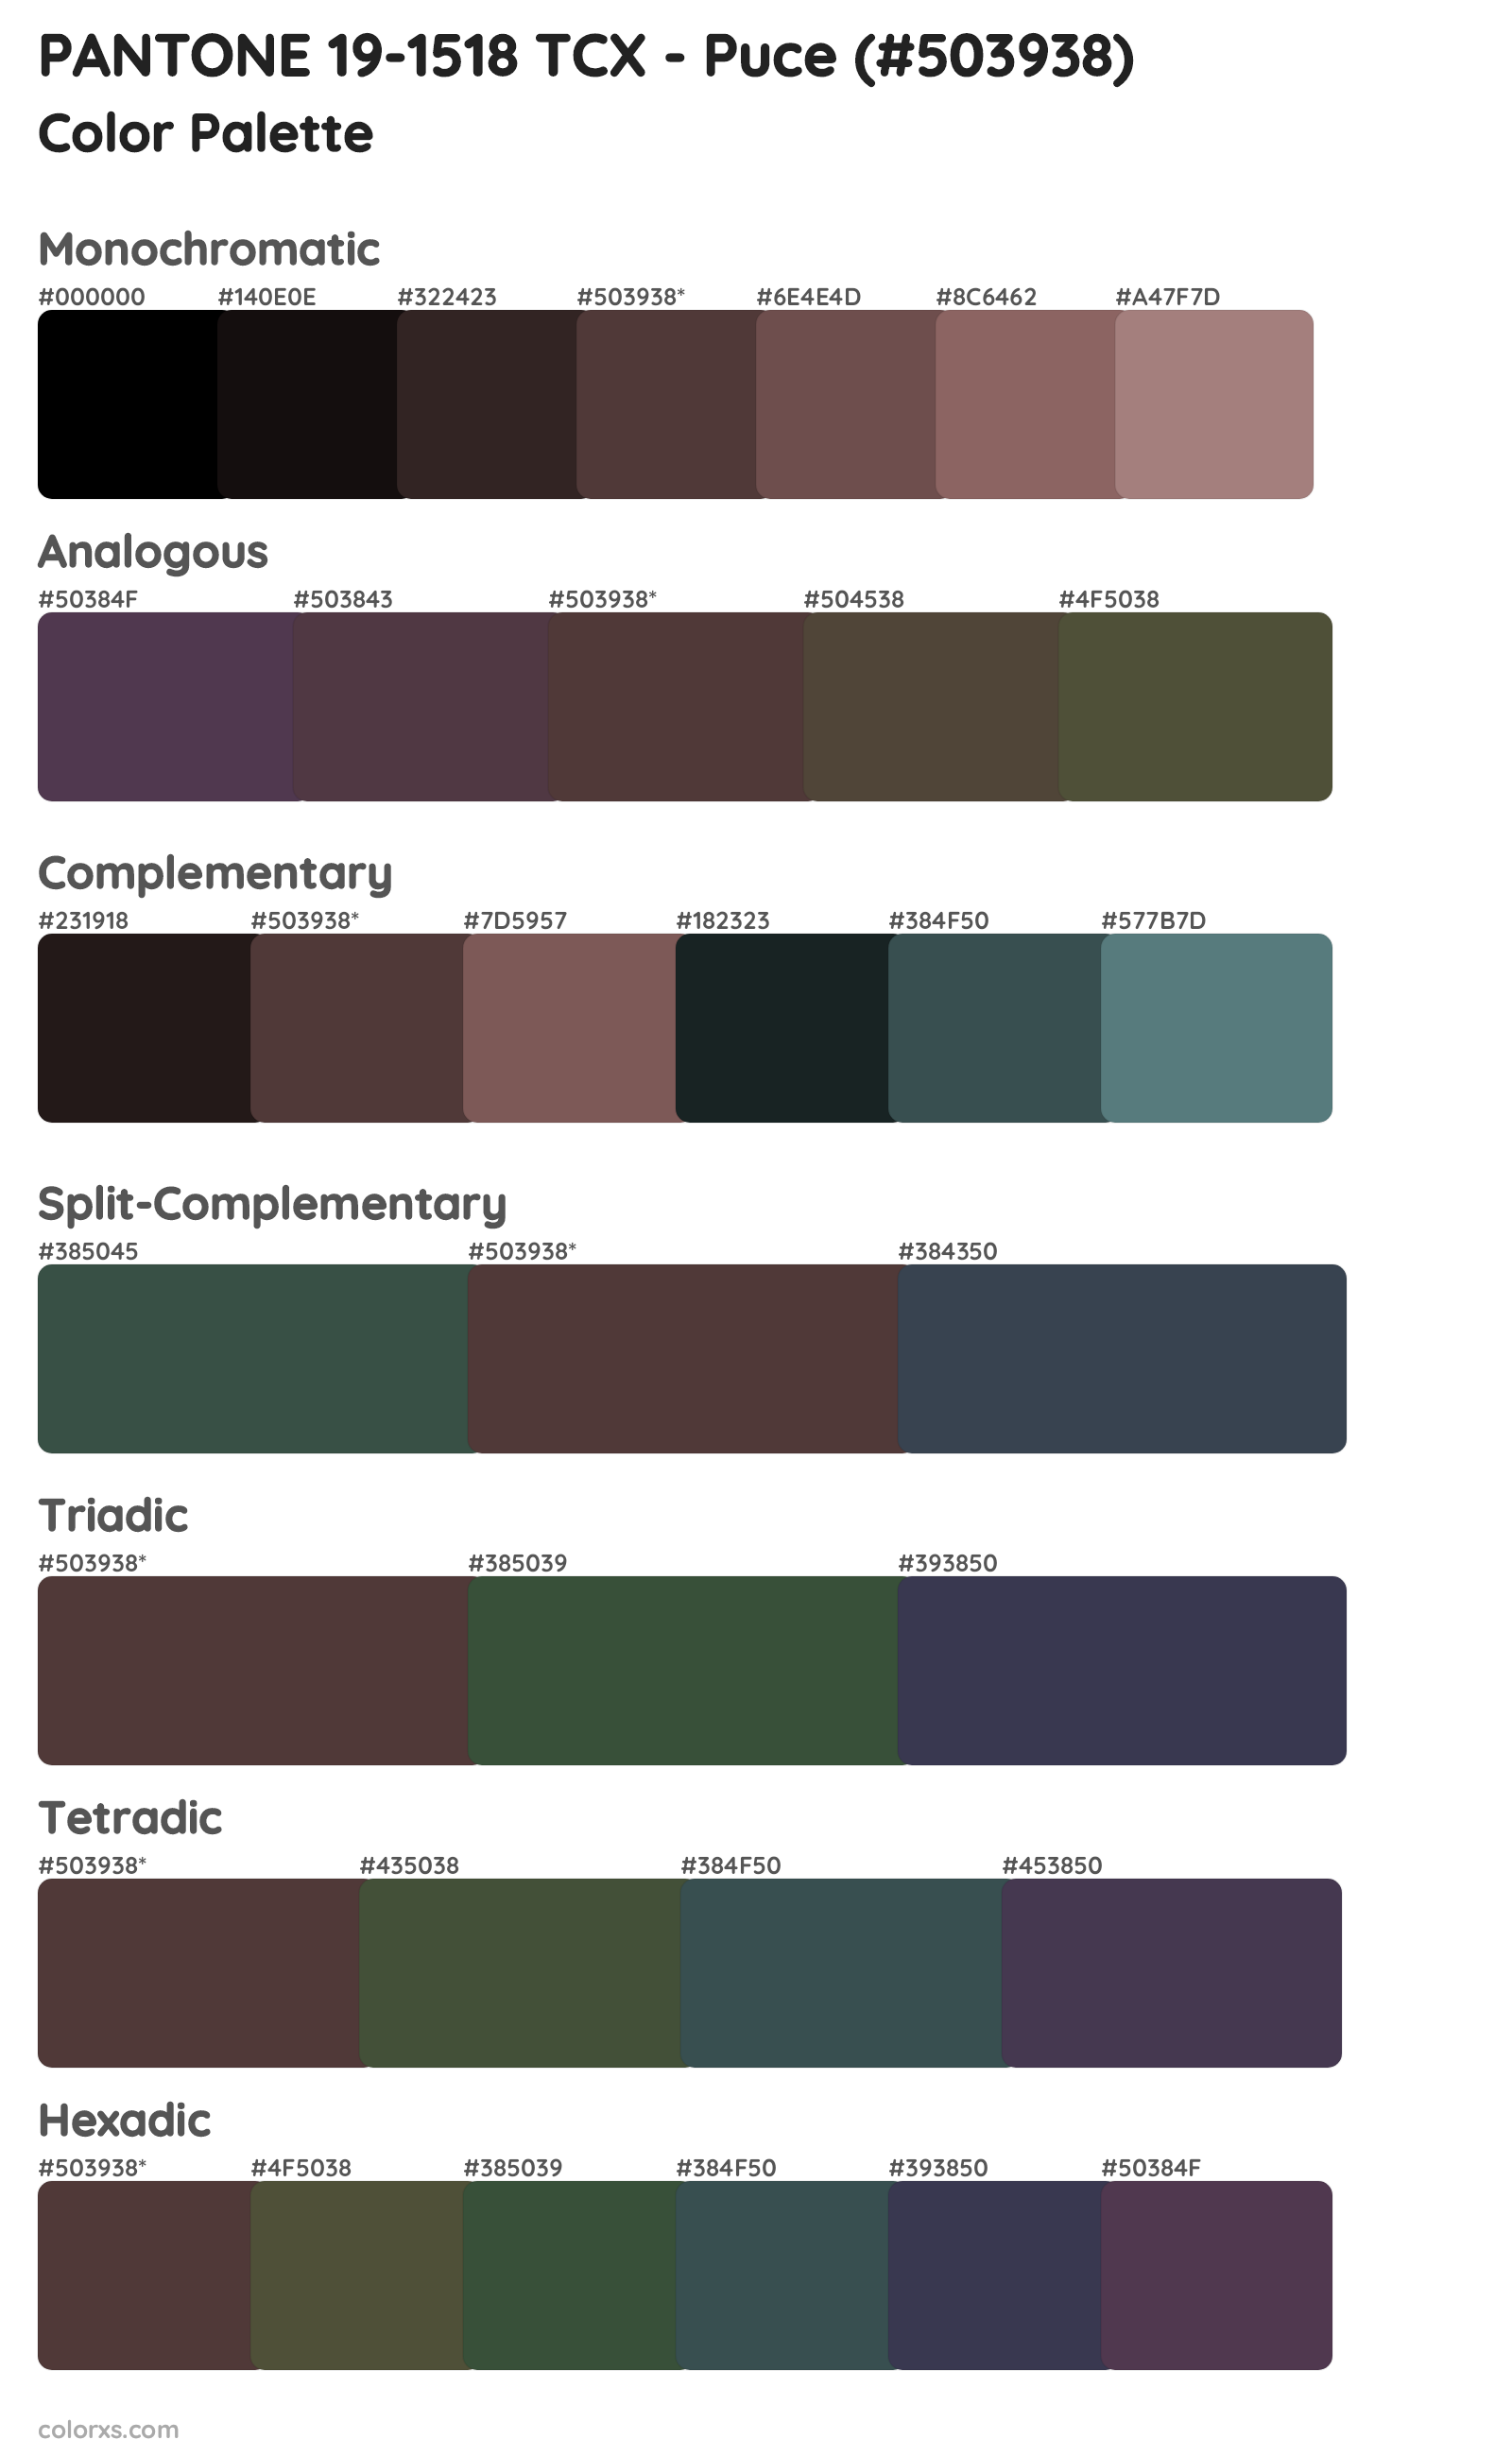 PANTONE 19-1518 TCX - Puce Color Scheme Palettes